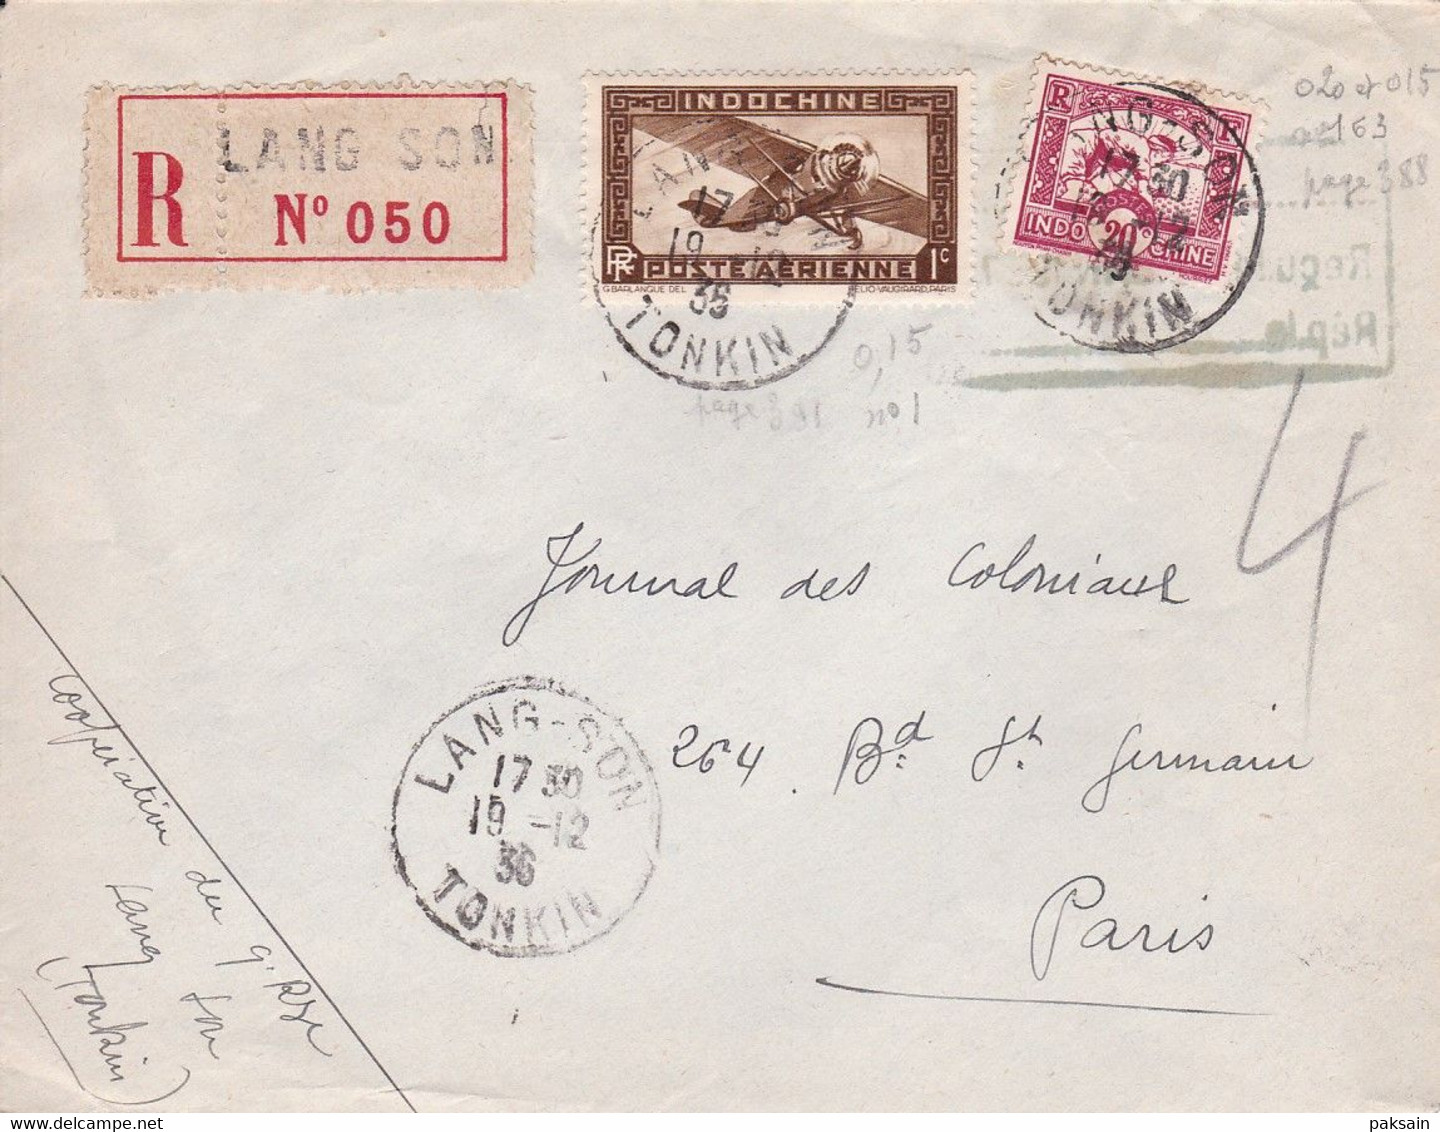 Indochine, Lettre Recommandée CAD LANG-SON TONKIN 19.12.1936 + Cachet Hanoi Pour Le Journal Des Coloniaux Paris - Storia Postale